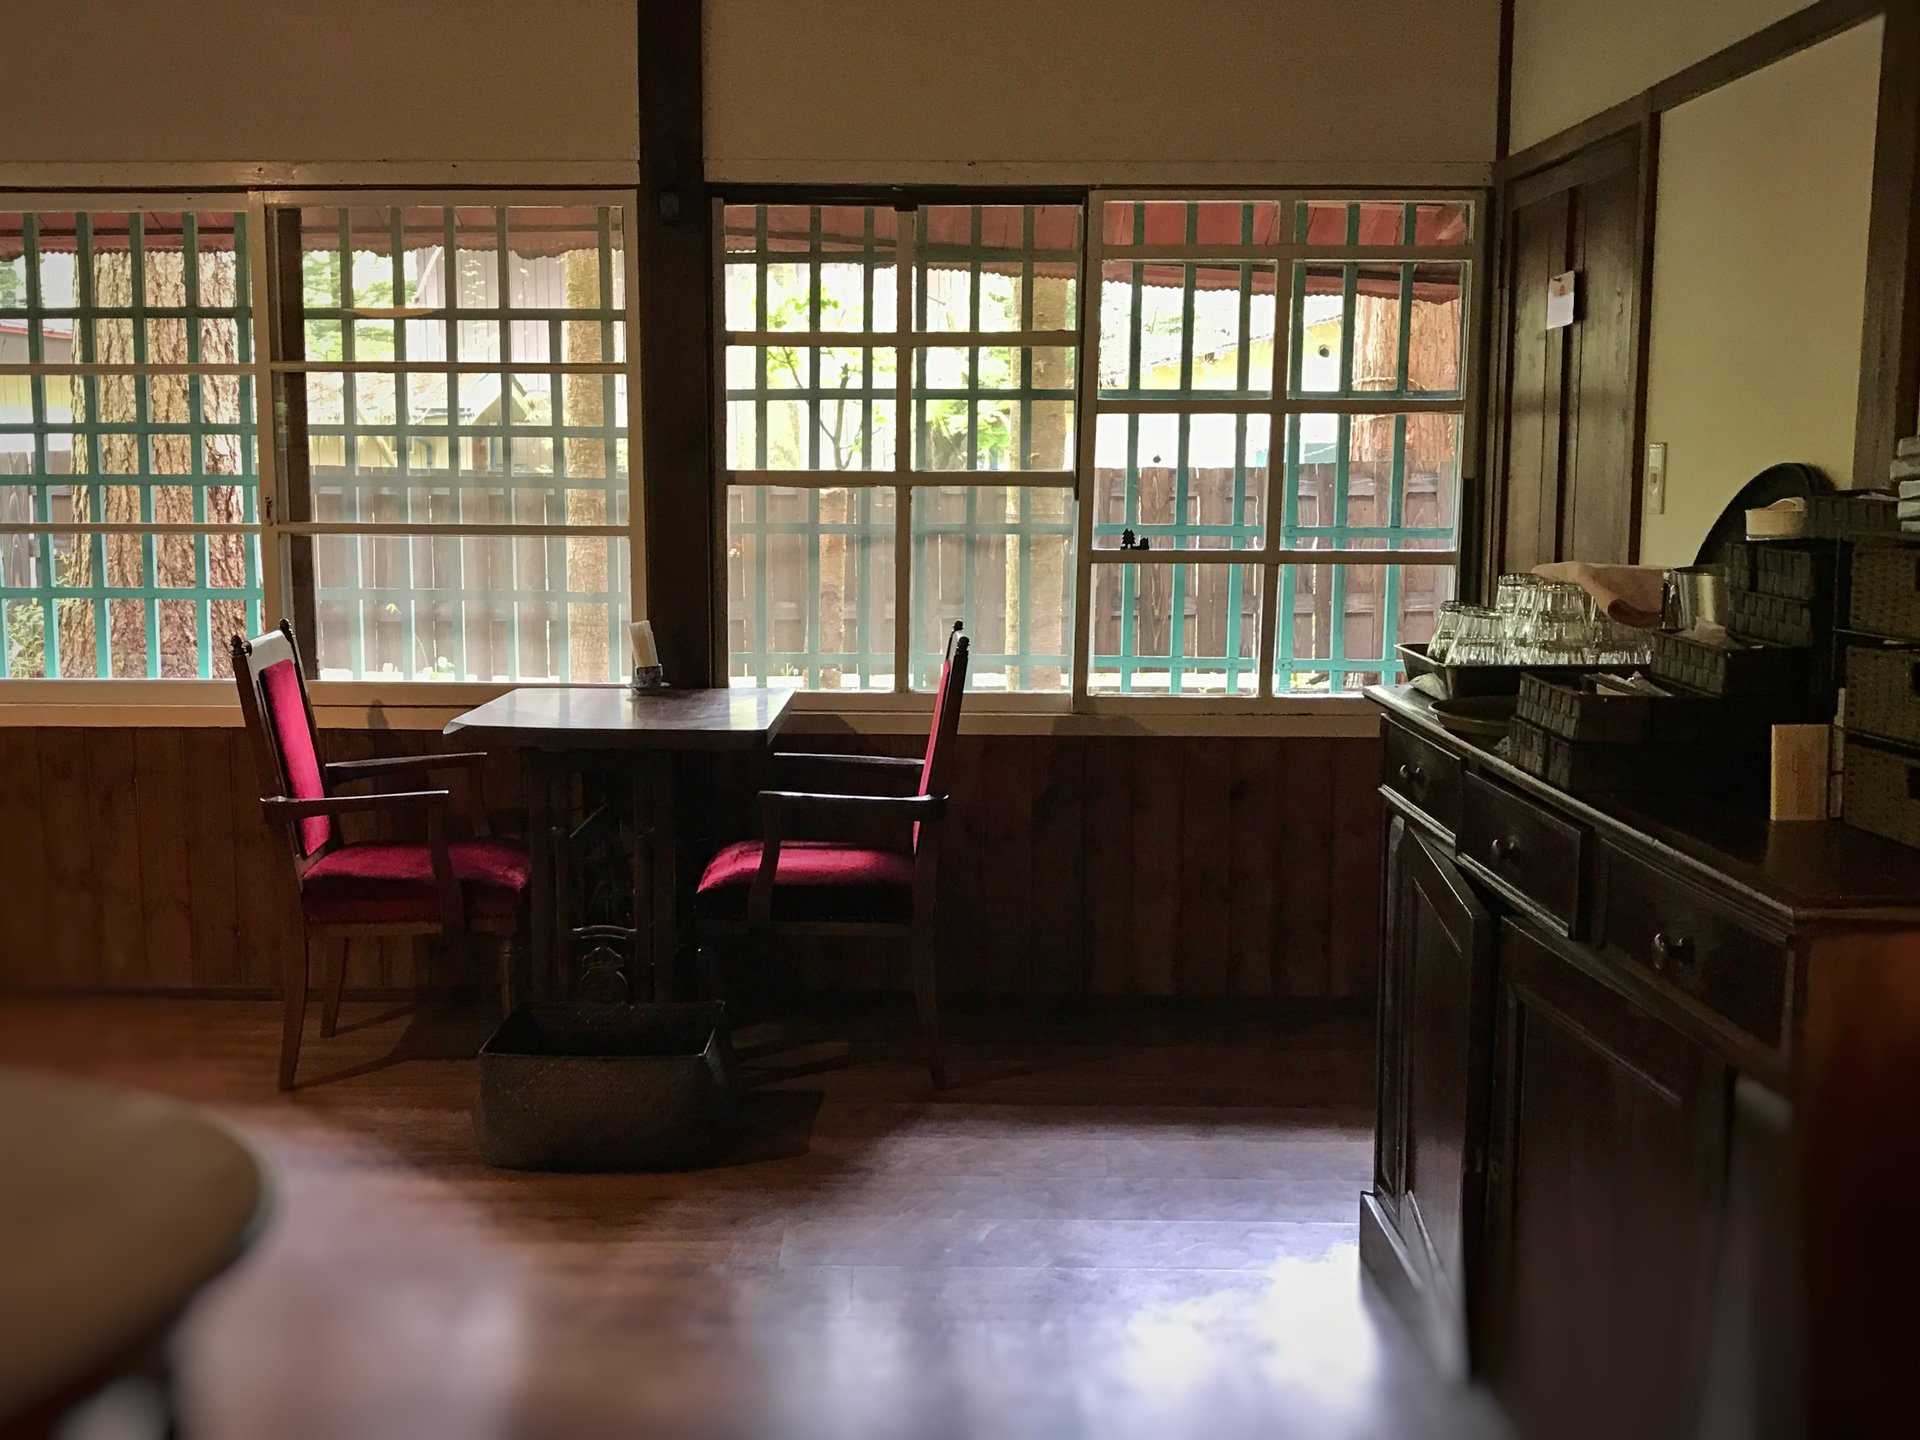 歴史ある別荘を改装。ノスタルジックな「涼の音」でモーニング【旧軽井沢・カフェ】